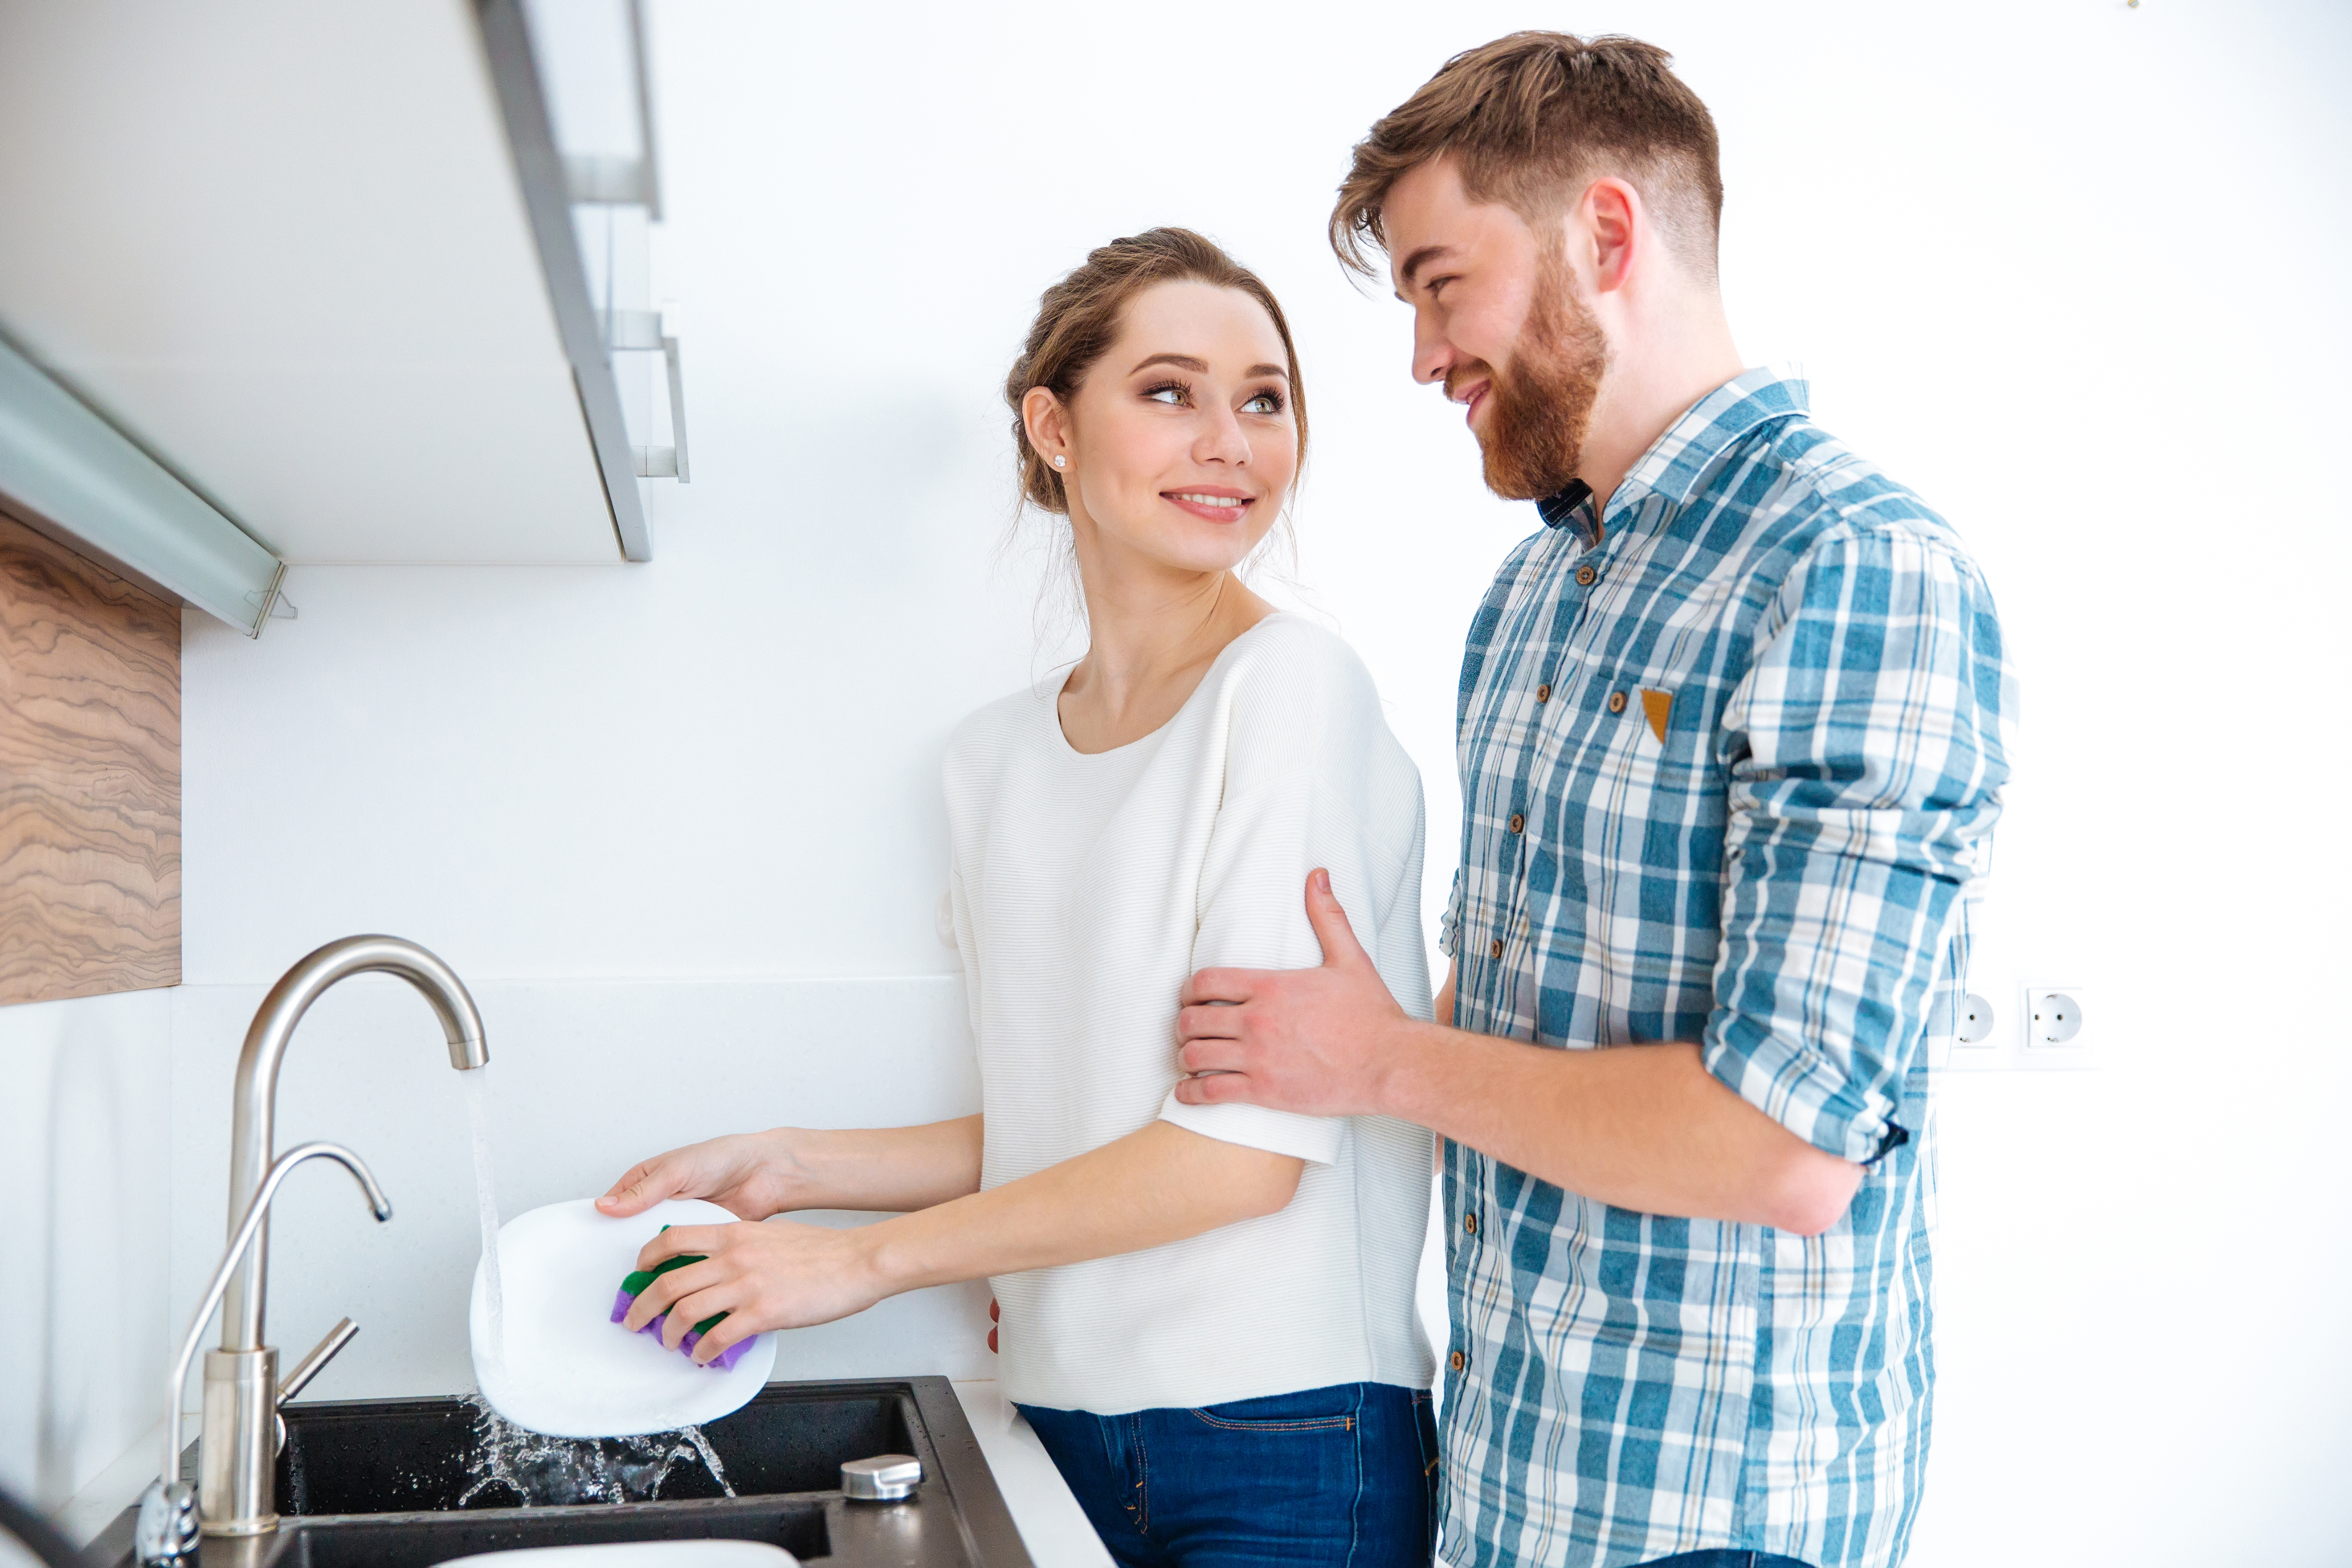 Un mari qui aide sa femme dans la cuisine | Source : Shutterstock